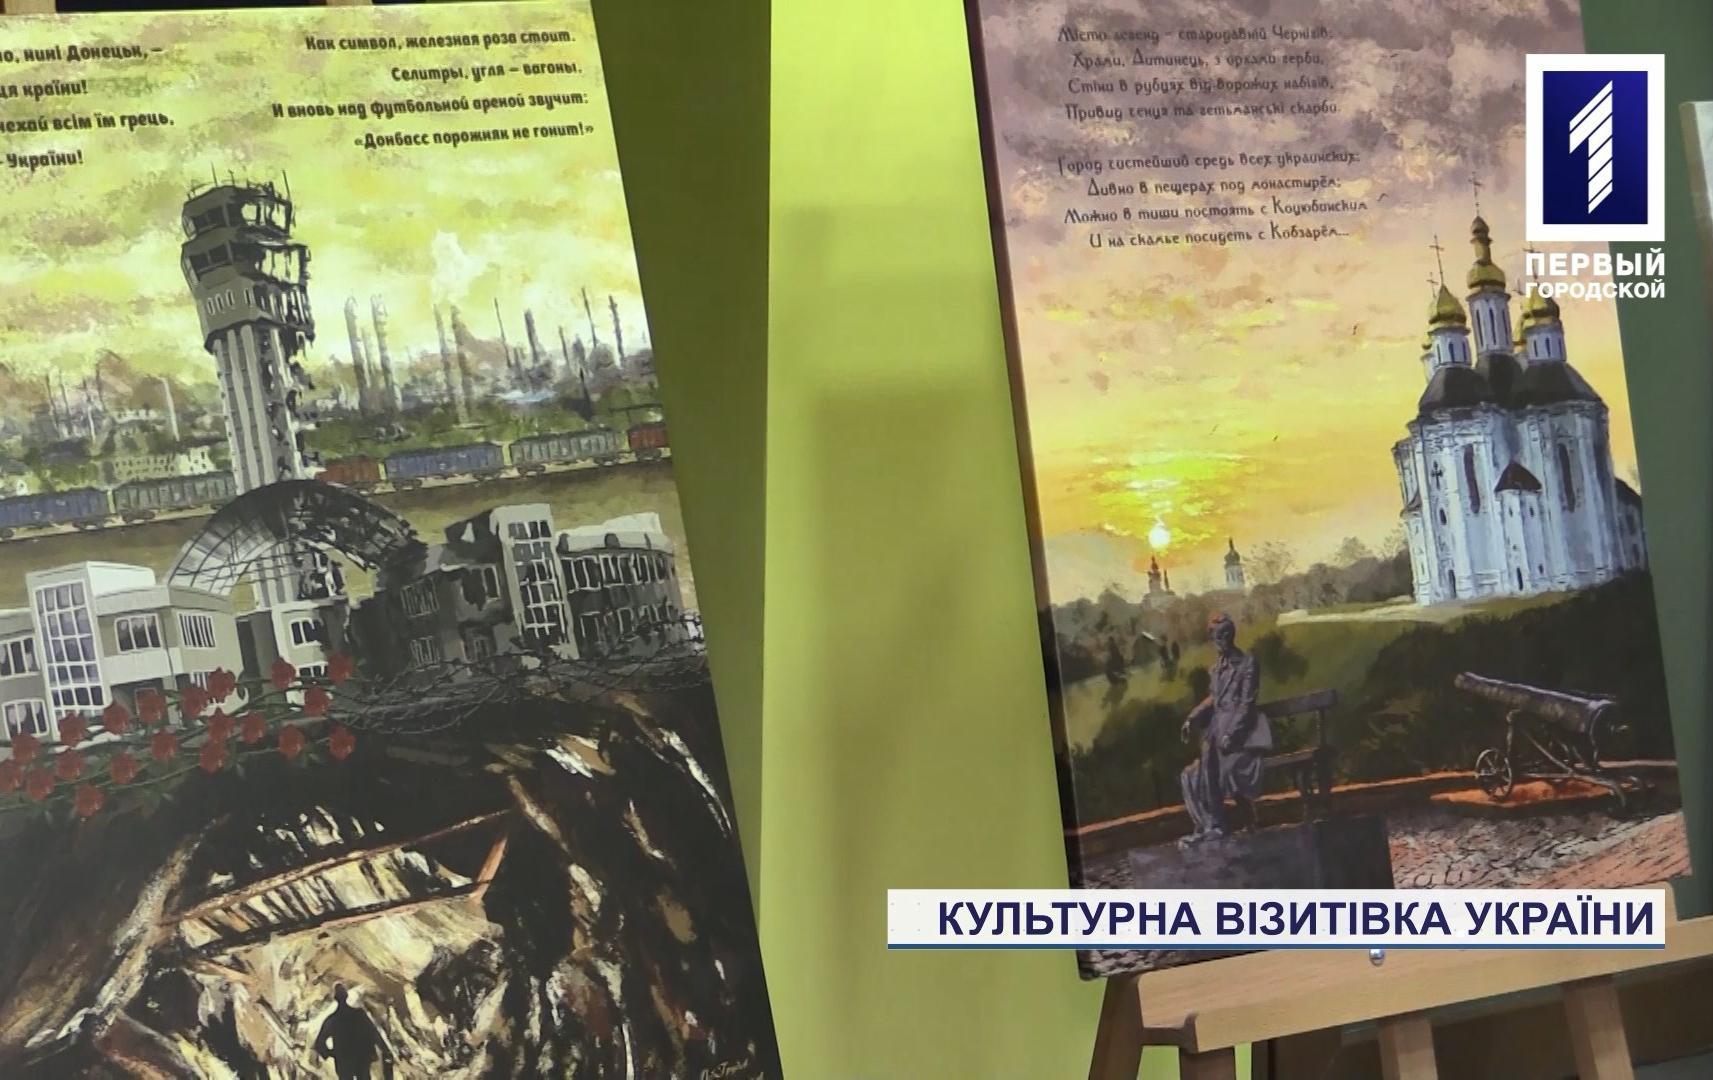 Виставка «Культурна візитівка України» відкрилась у Кривому Розі